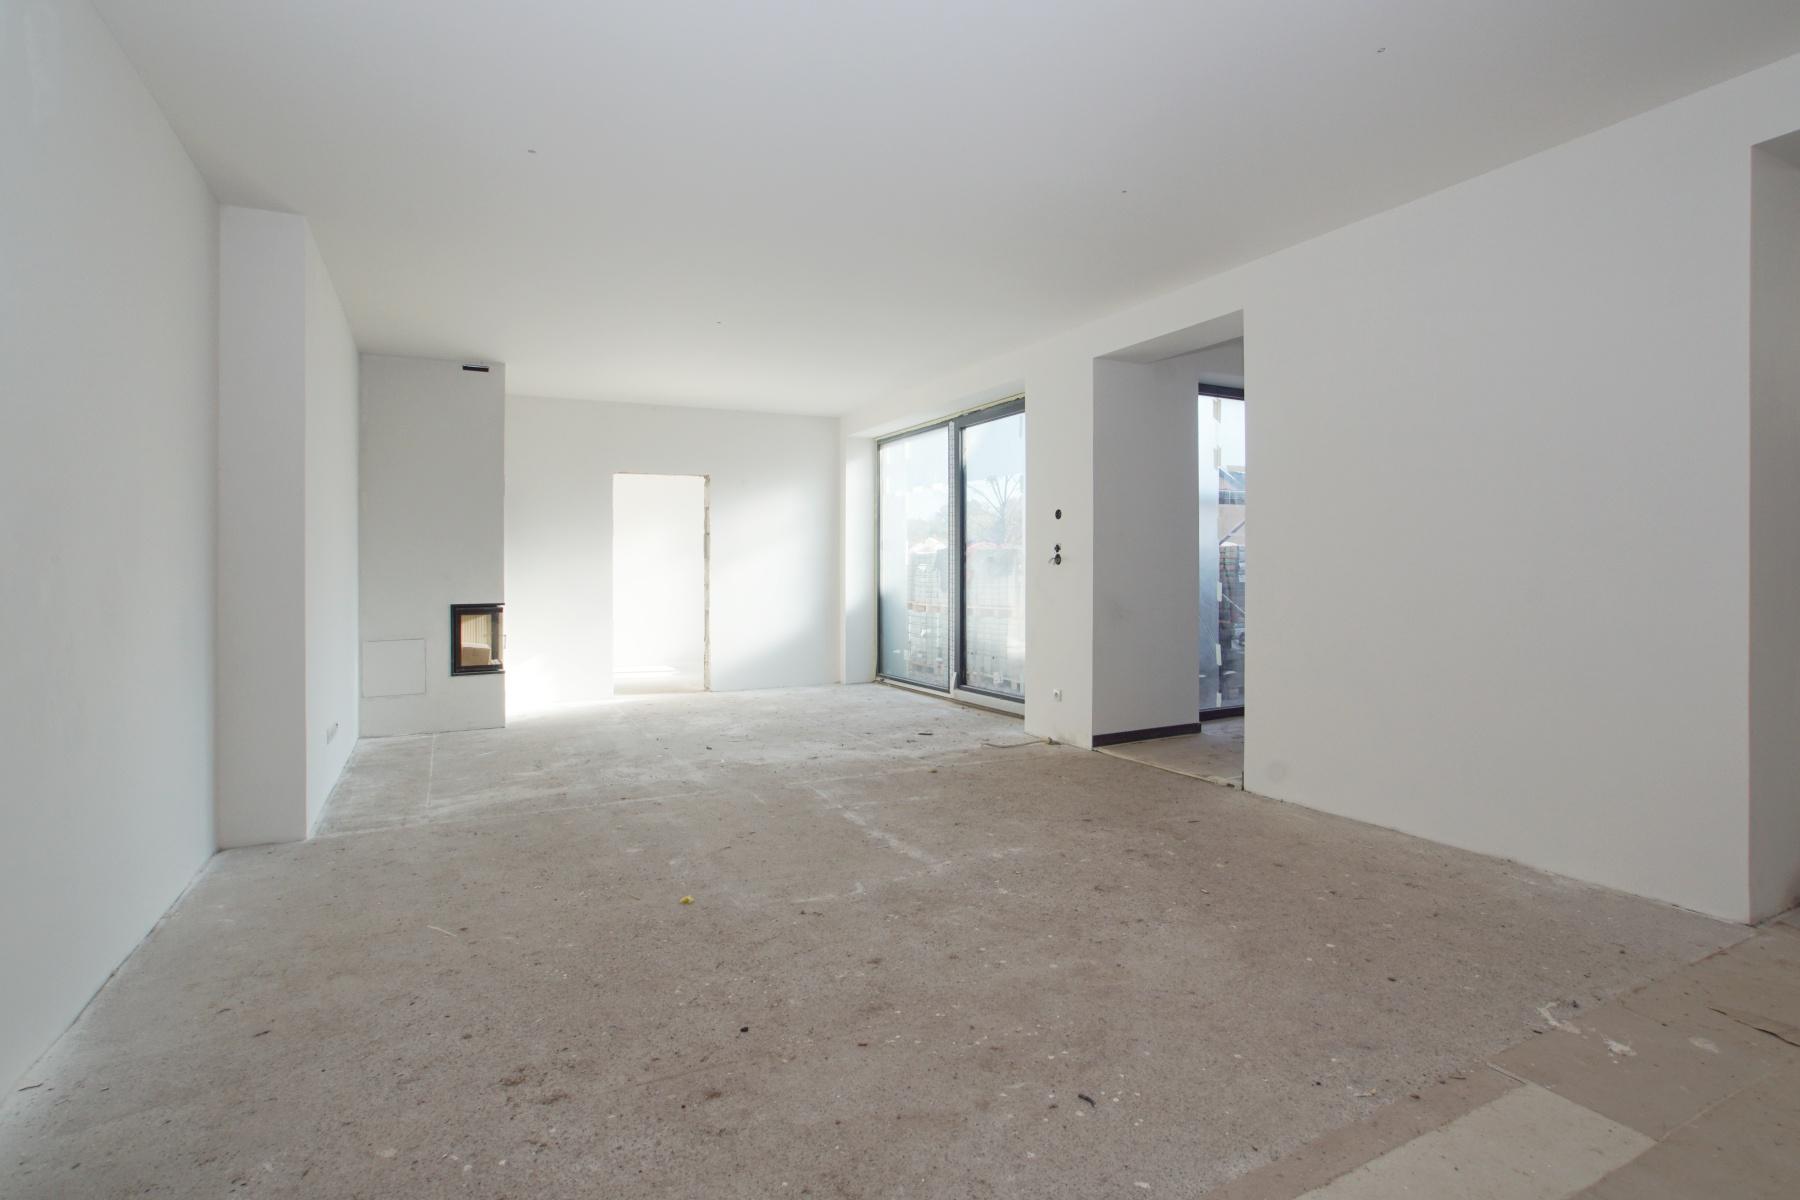 Exkluzivně k prodeji byt 4+kk v novostavbě apartmánového domu, 104m2, nedaleko ski areálu Černý Důl